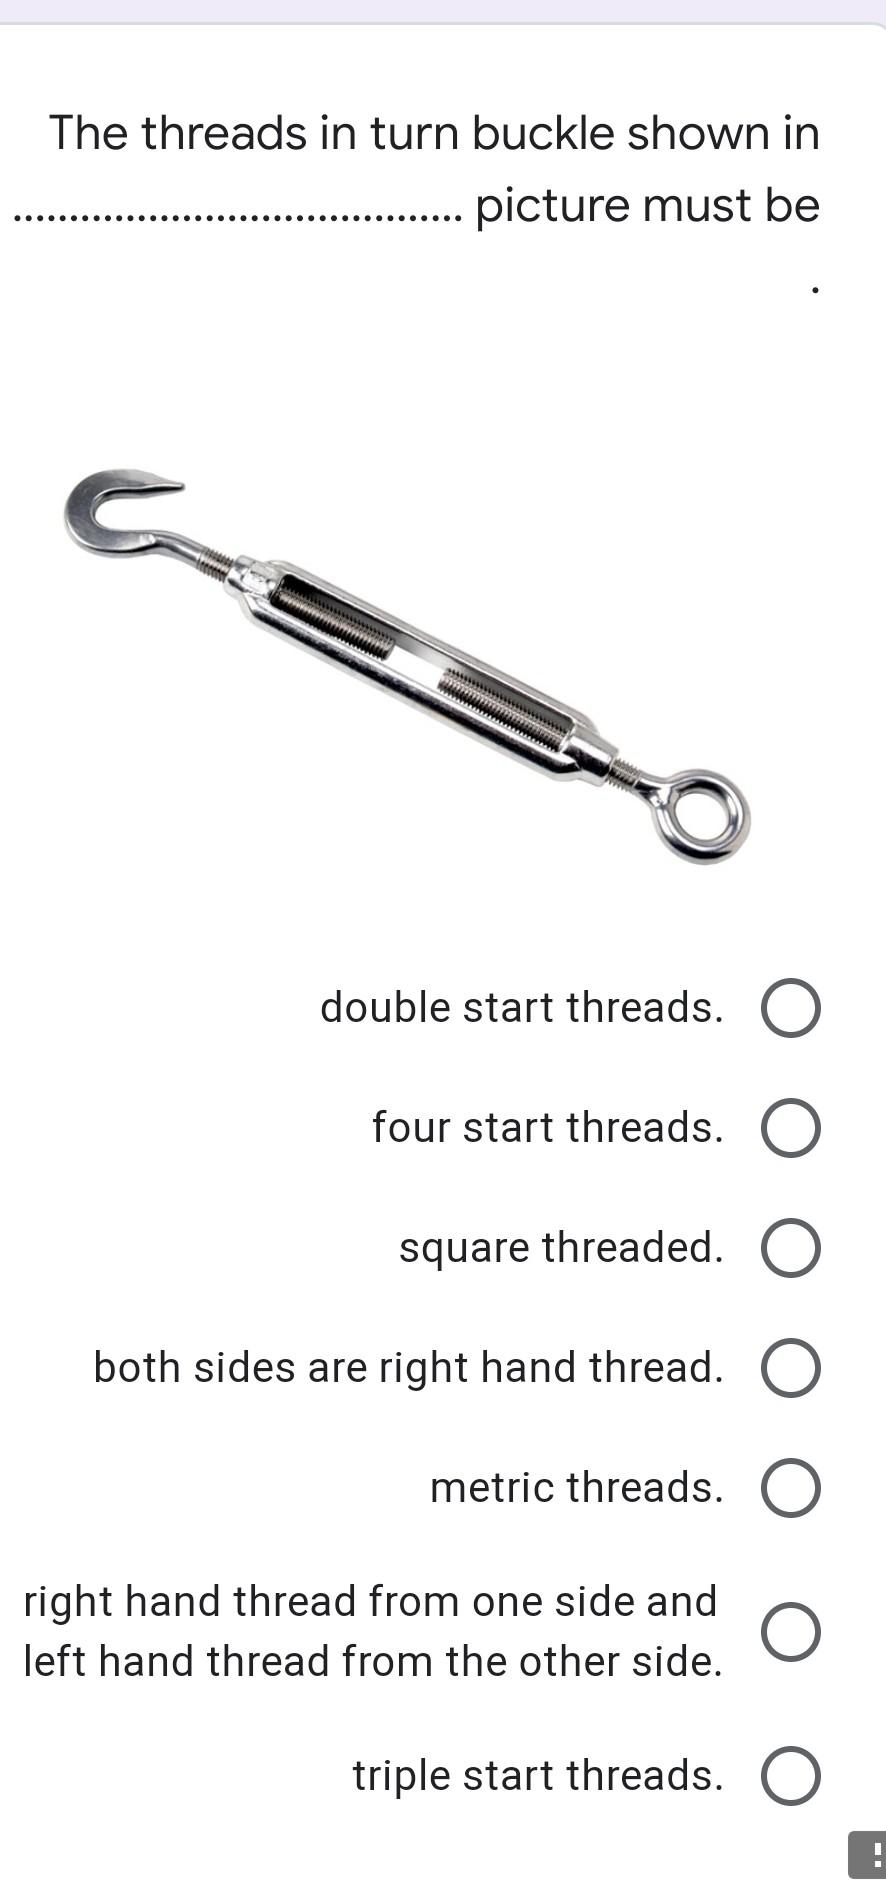 How to thread a buckle 